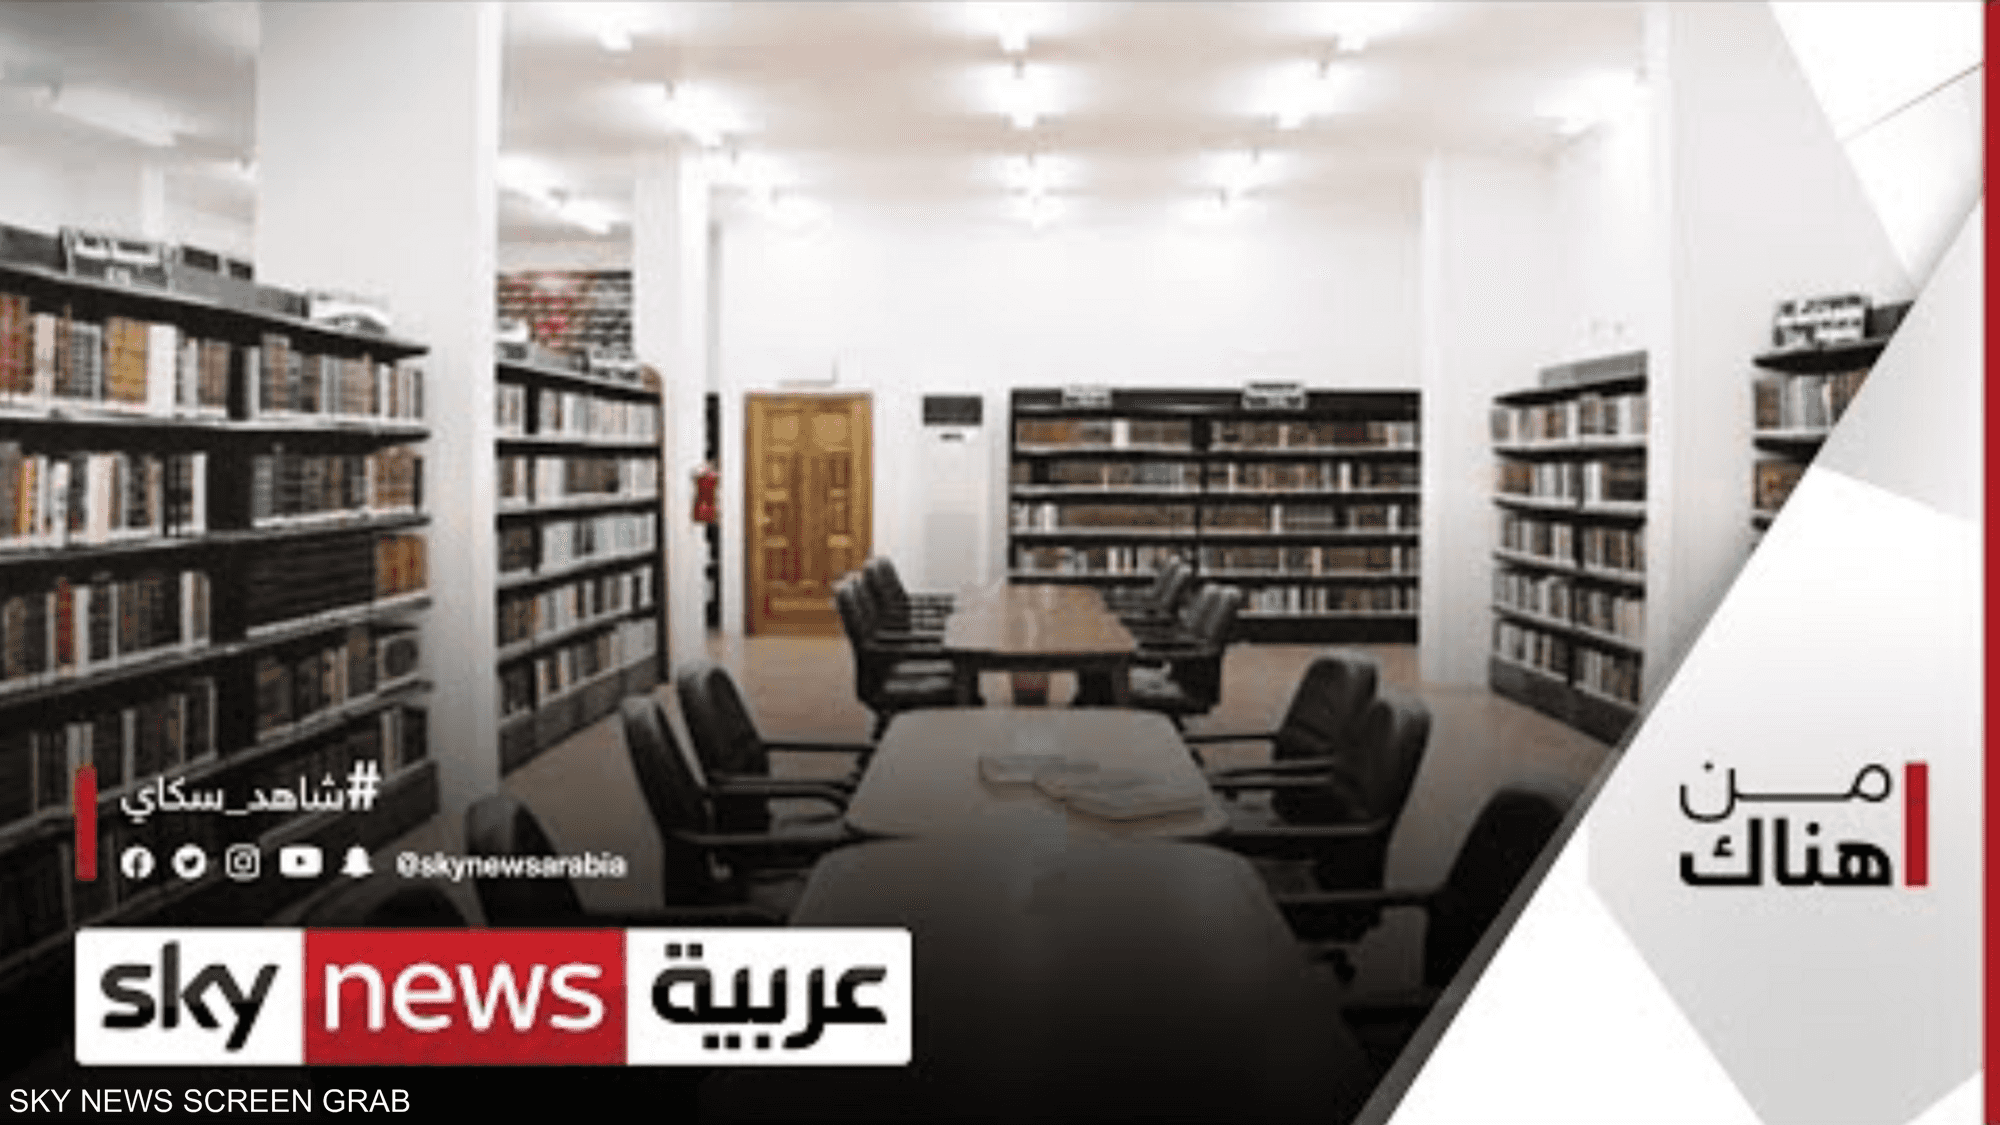 مكتبات الكويت.. تاريخ حافل في مسيرة النهضة الثقافية